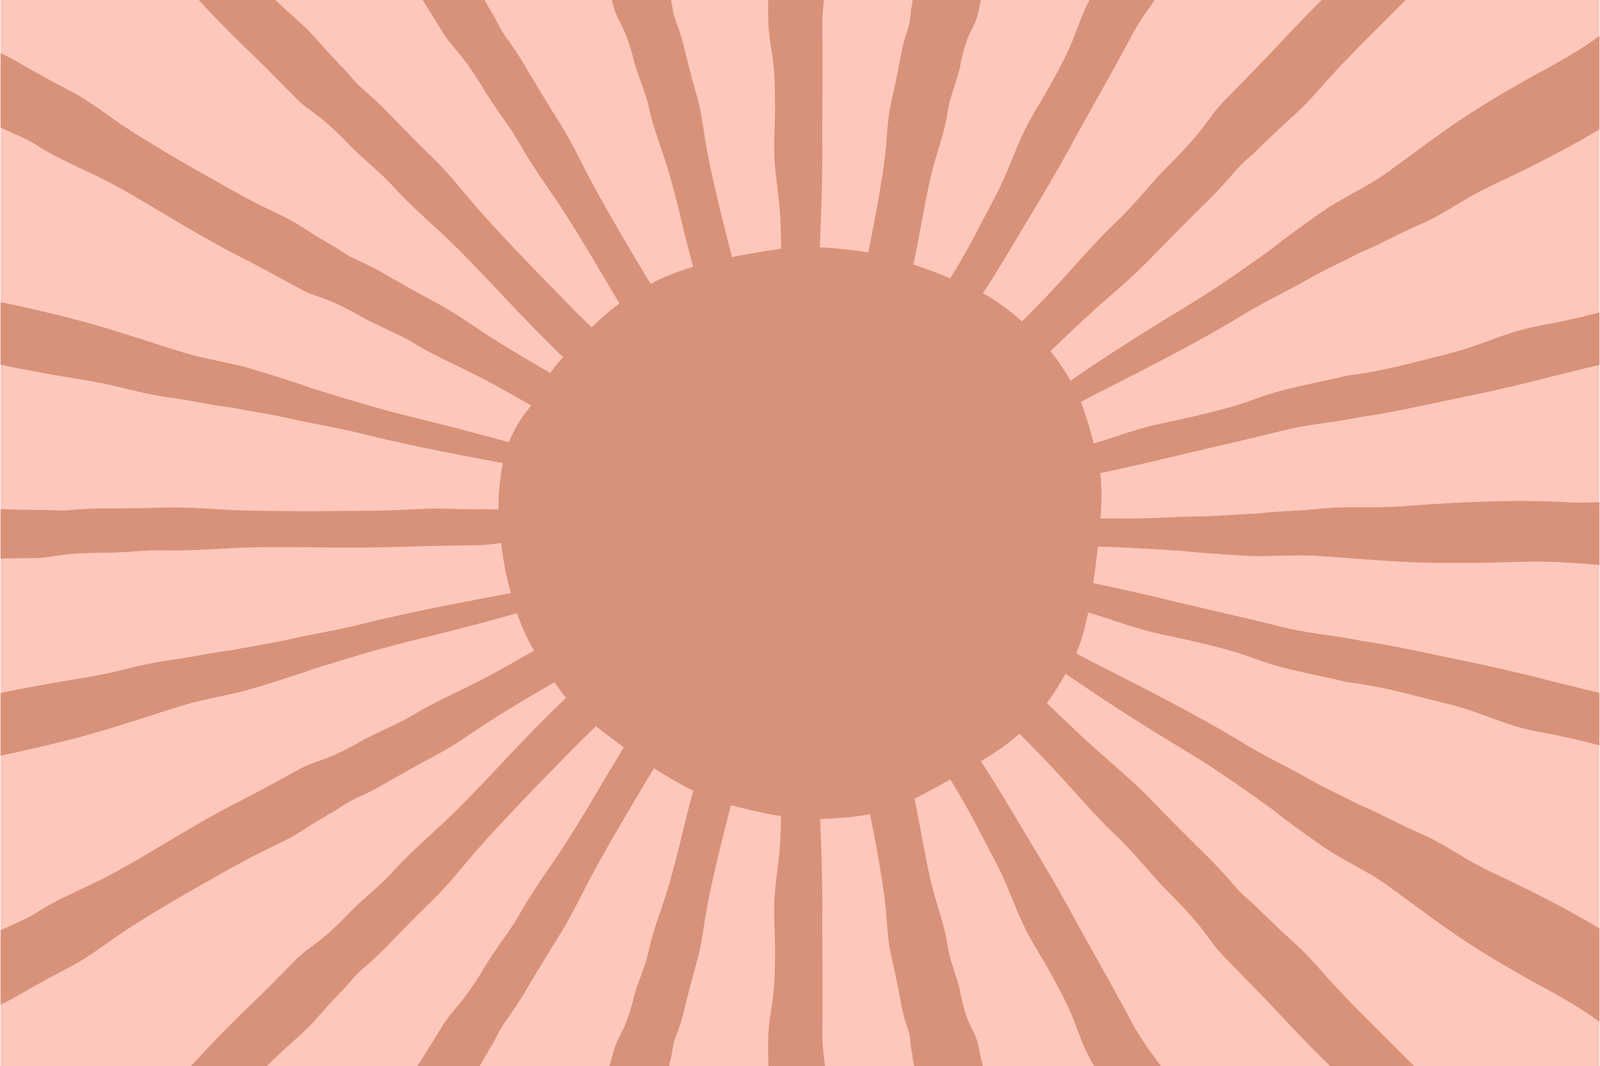             Leinwand abstrakte Sonne im gemalten Stil – 90 cm x 60 cm
        